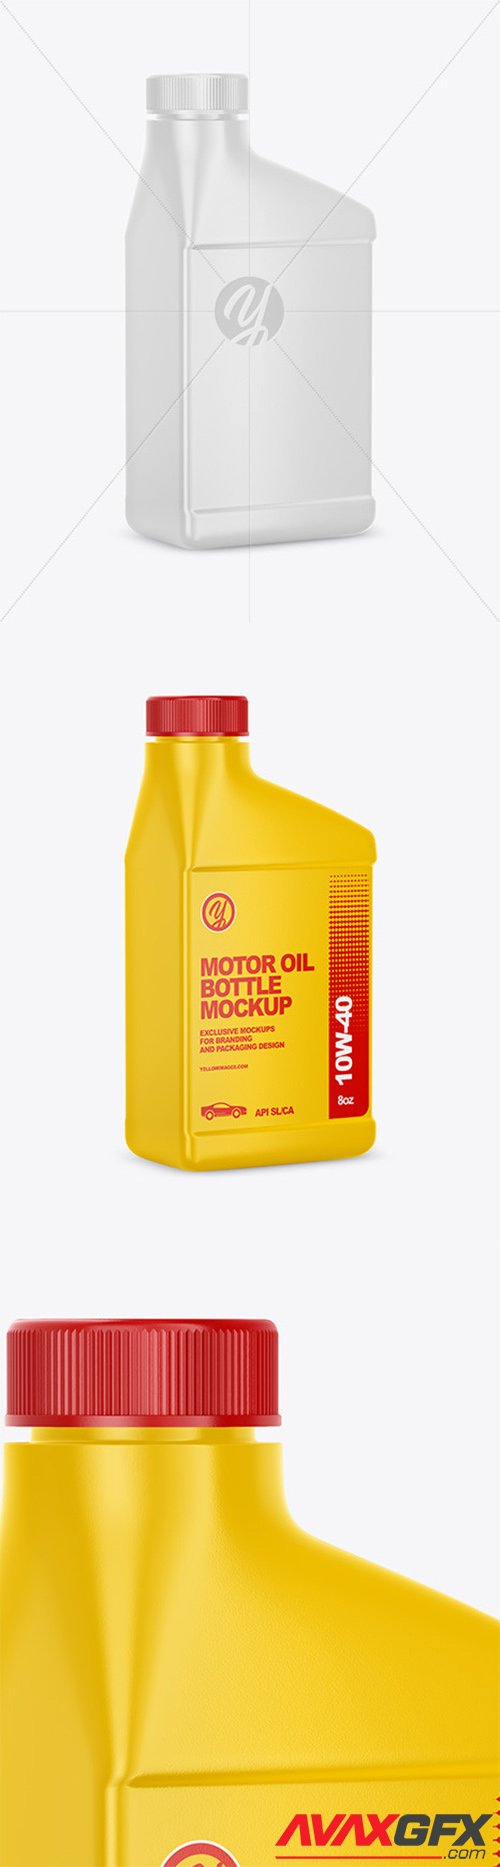 Motor Oil Bottle Mockup 60632